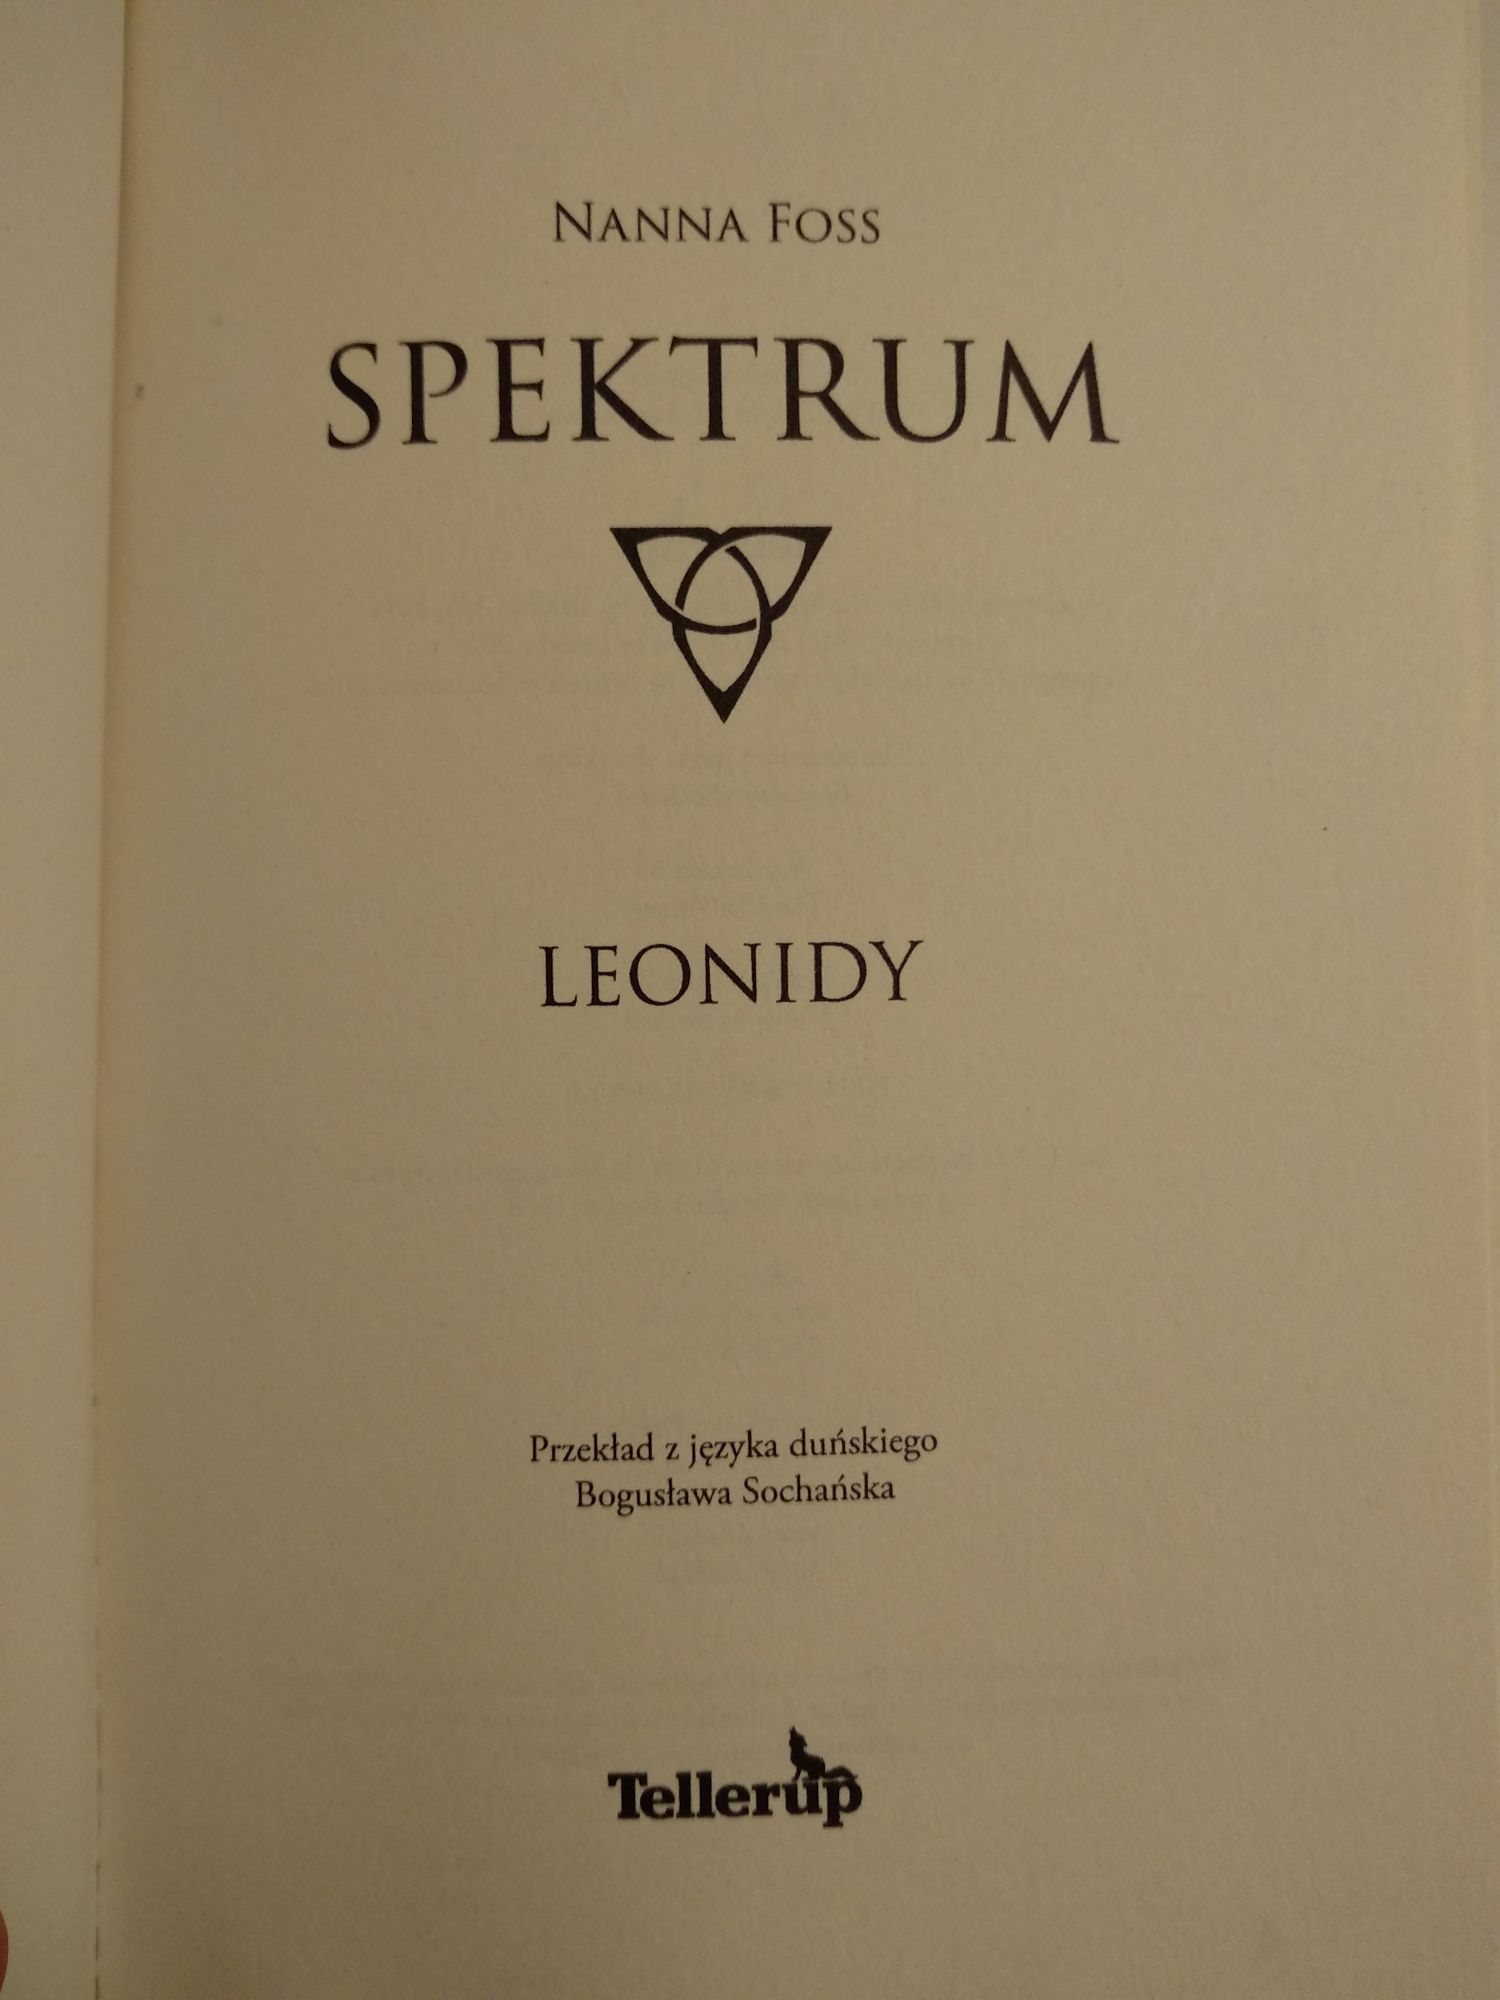 Spektrum. Leonidy - Nanna Foss - duńska powieść